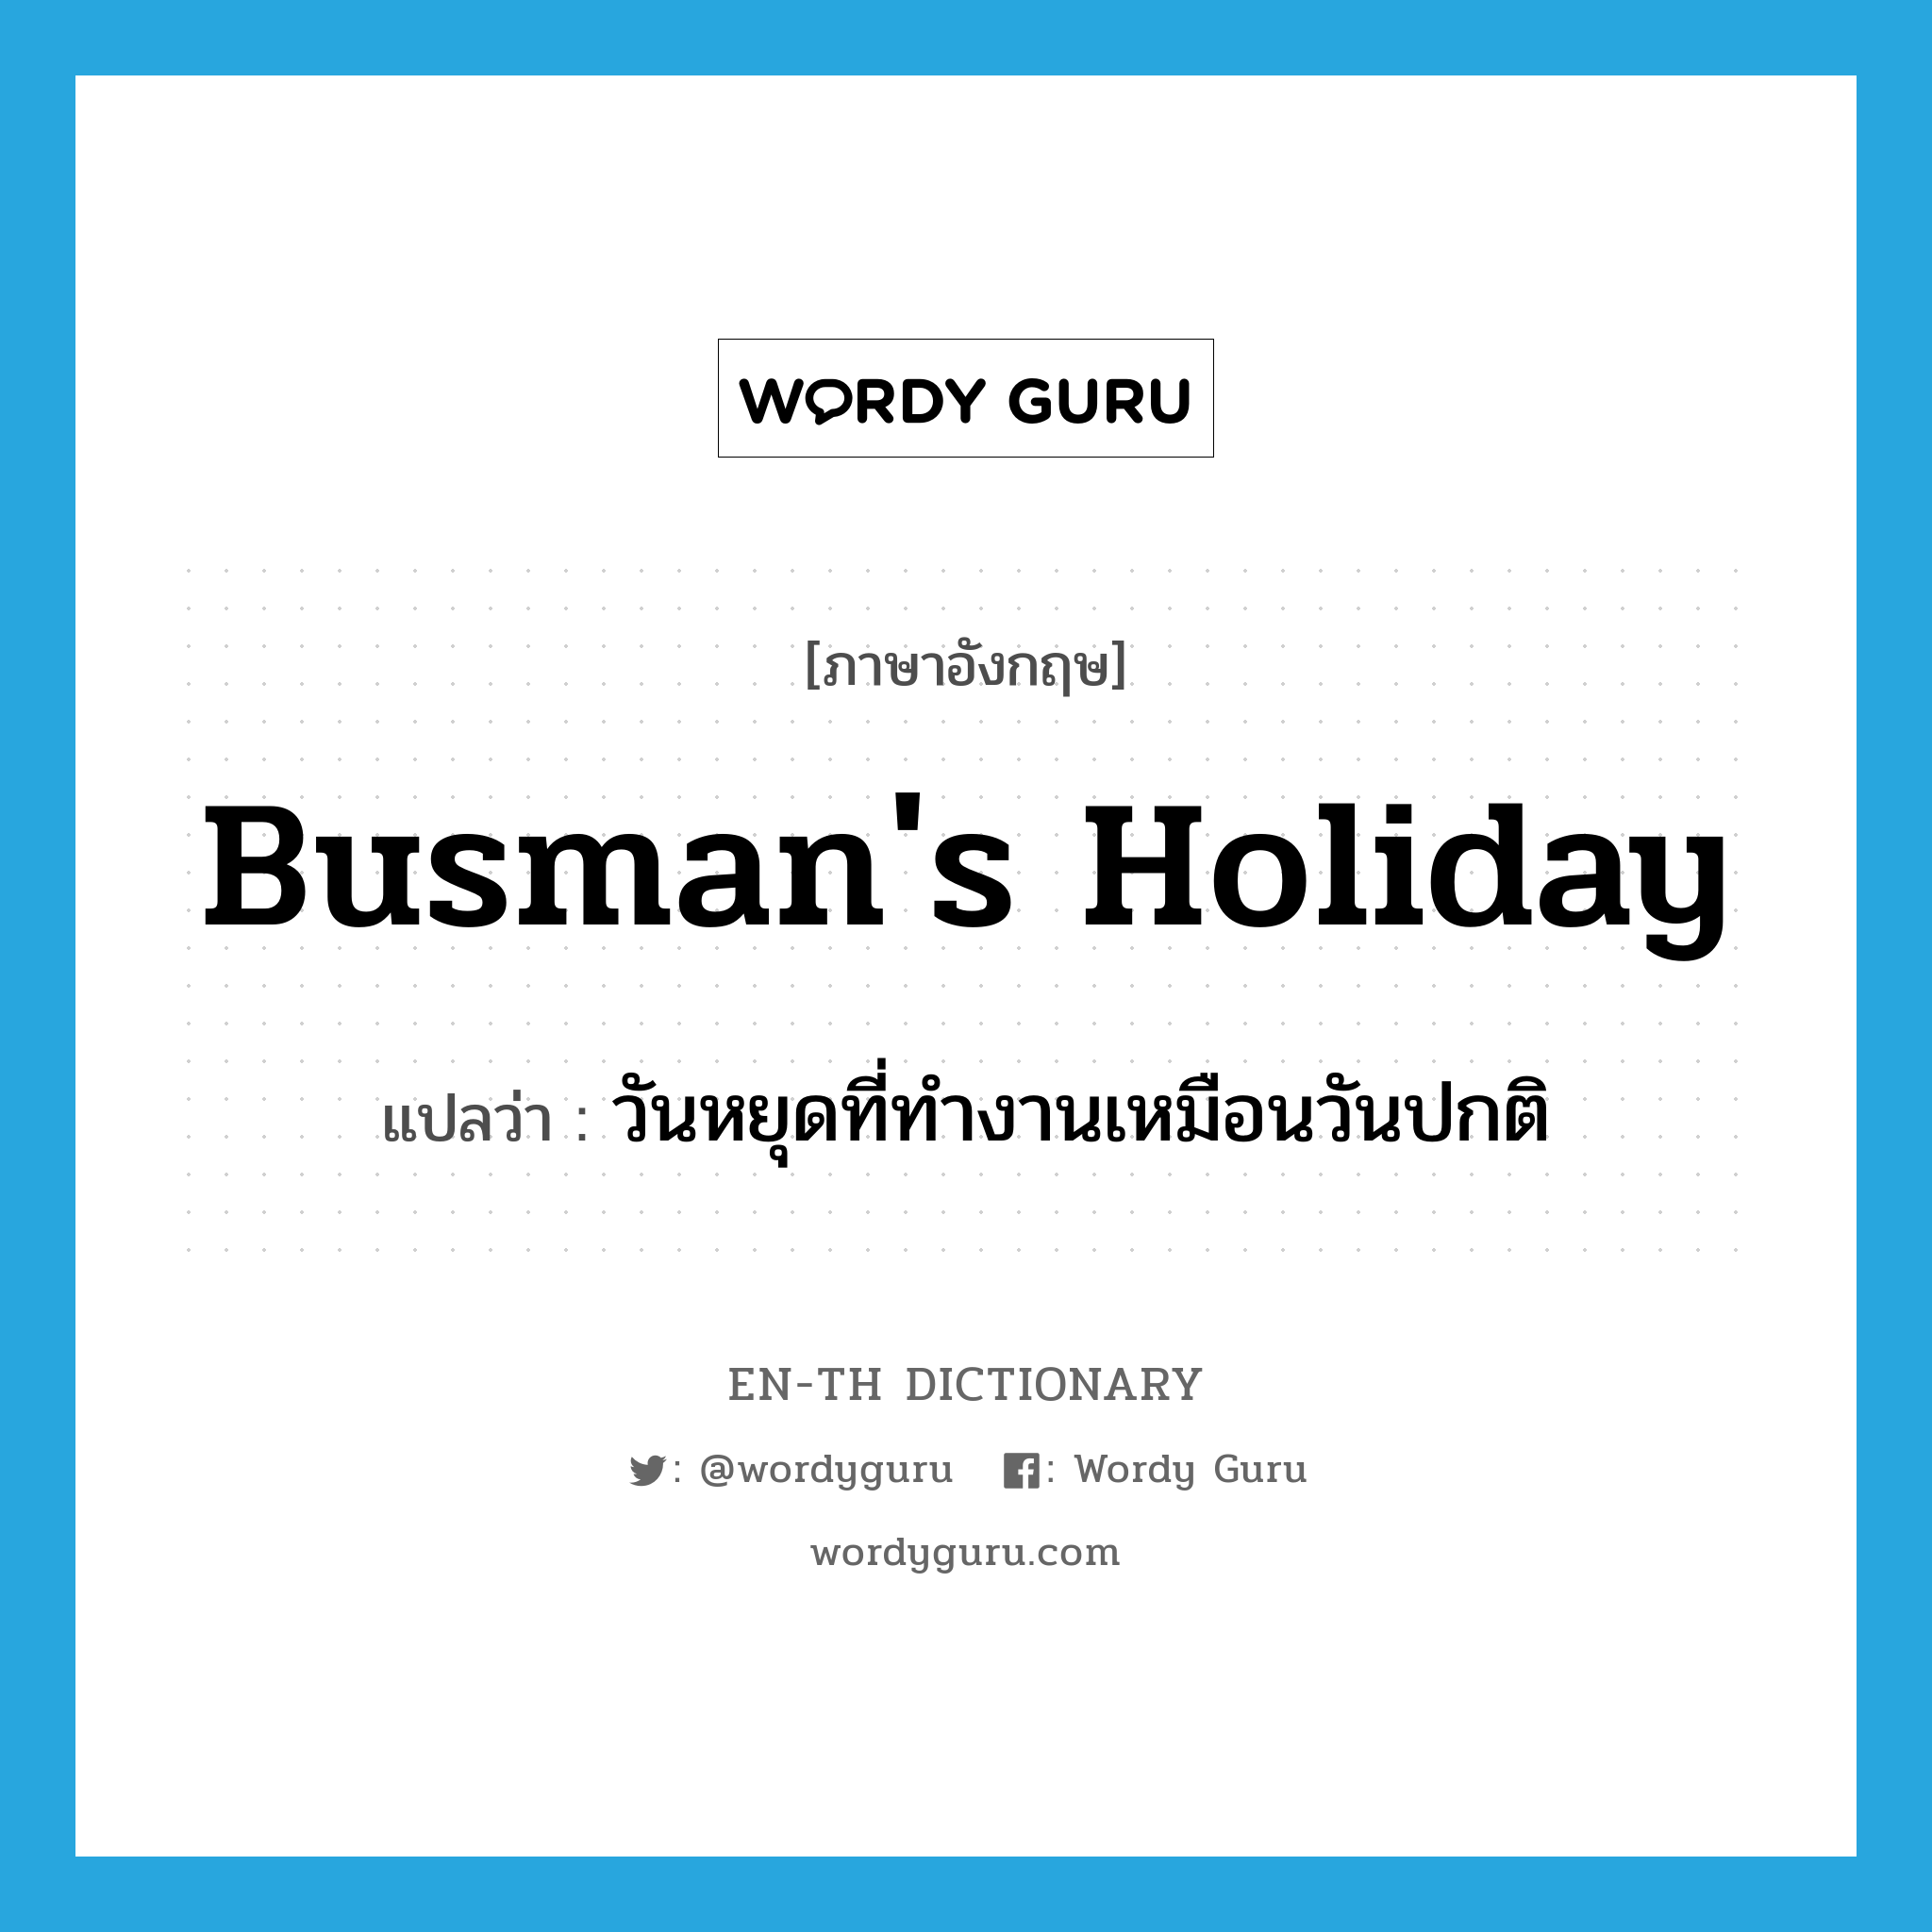 วันหยุดที่ทำงานเหมือนวันปกติ ภาษาอังกฤษ?, คำศัพท์ภาษาอังกฤษ วันหยุดที่ทำงานเหมือนวันปกติ แปลว่า busman's holiday ประเภท N หมวด N